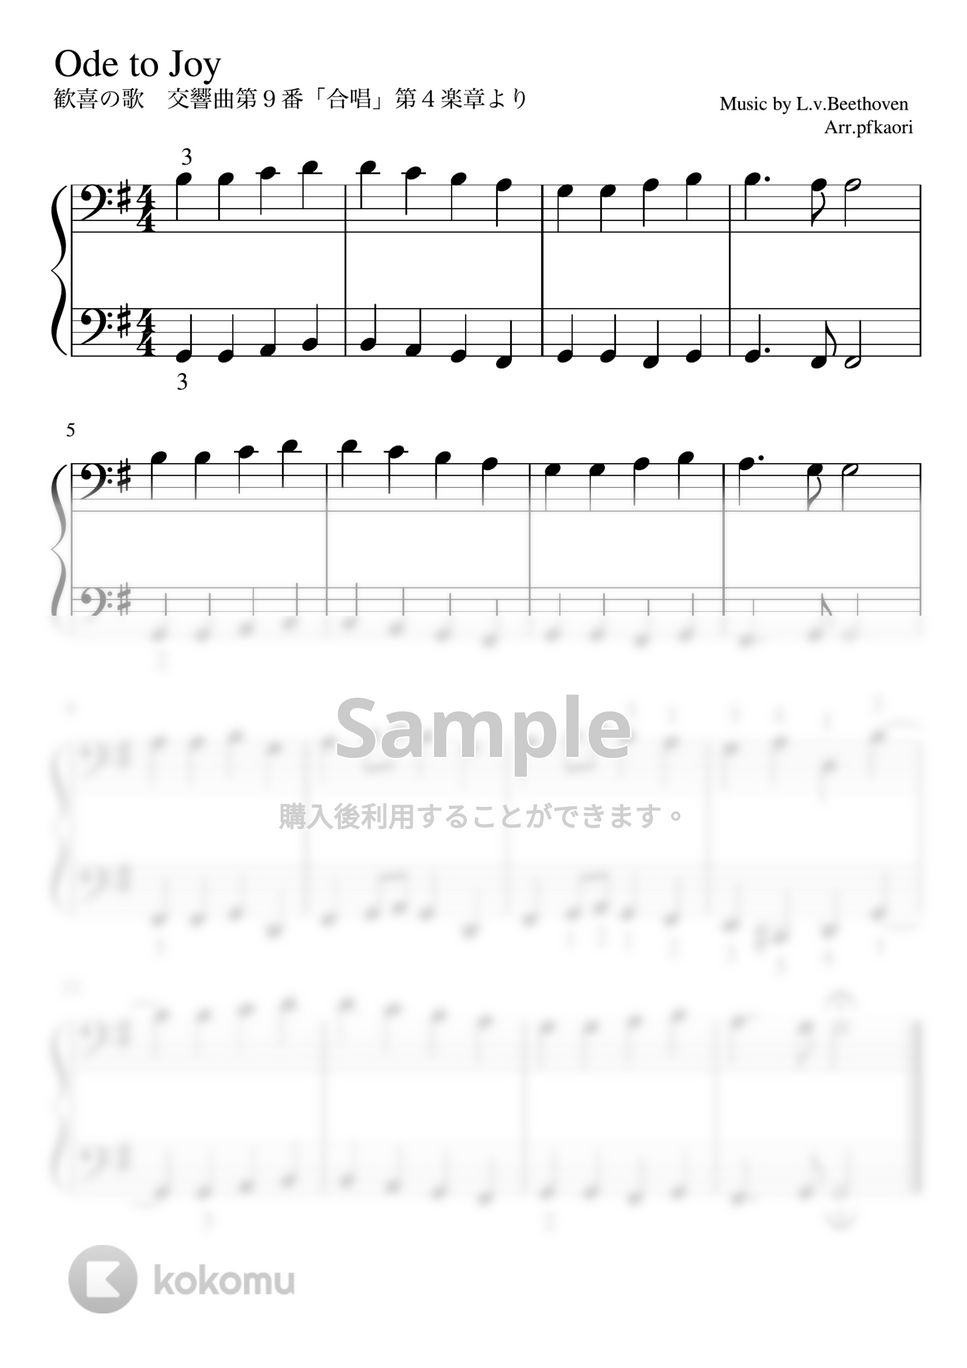 ベートーヴェン - 歓喜の歌 (Gdur・ピアノソロ初級) by pfkaori